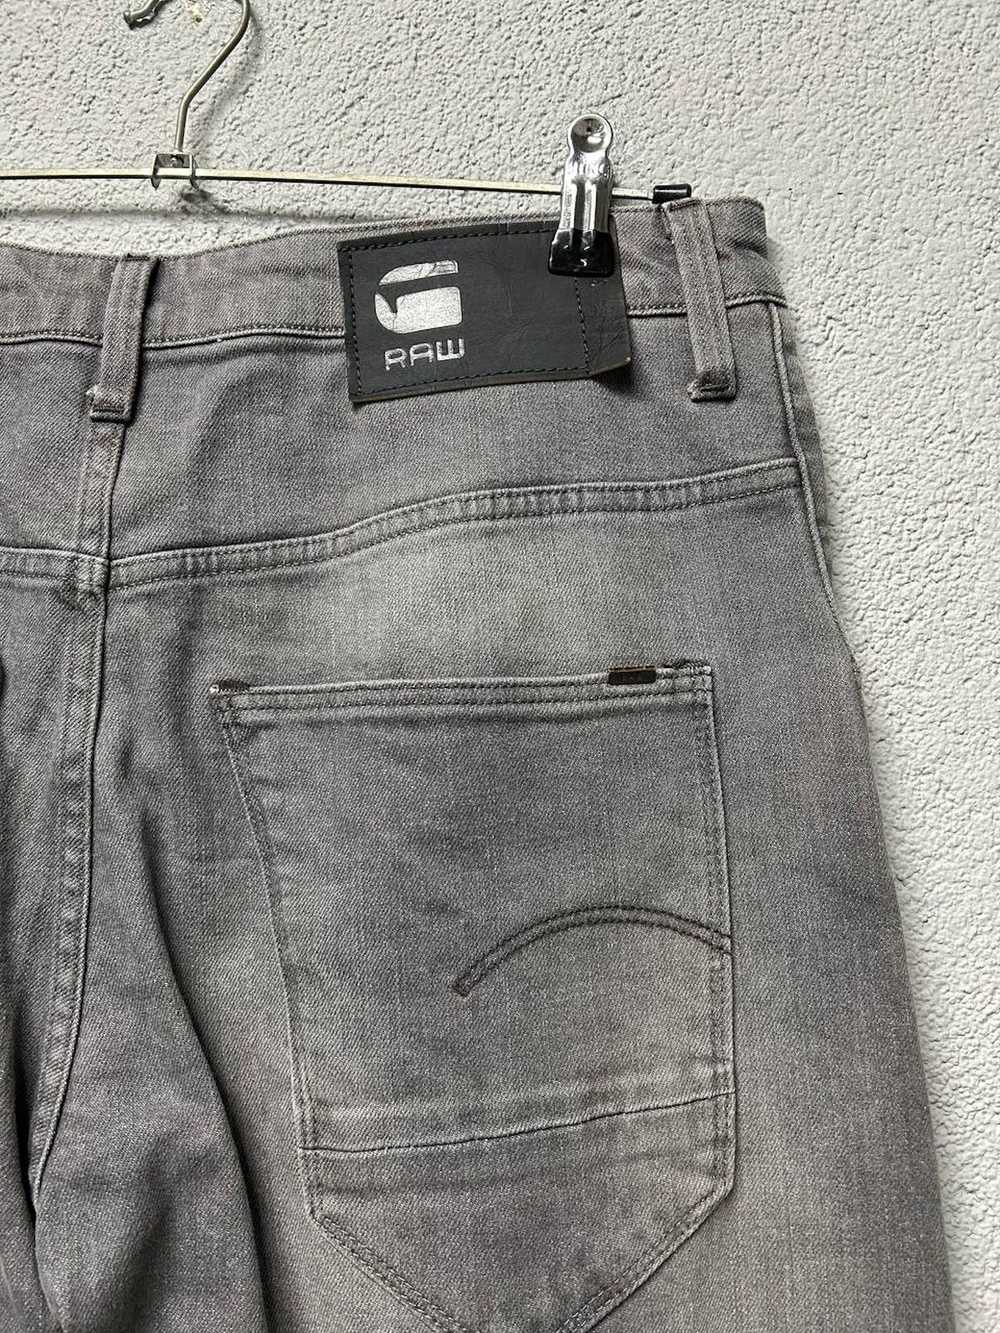 Gstar G Star Raw ARC 3d jeans mens W 30 L 34 - image 8